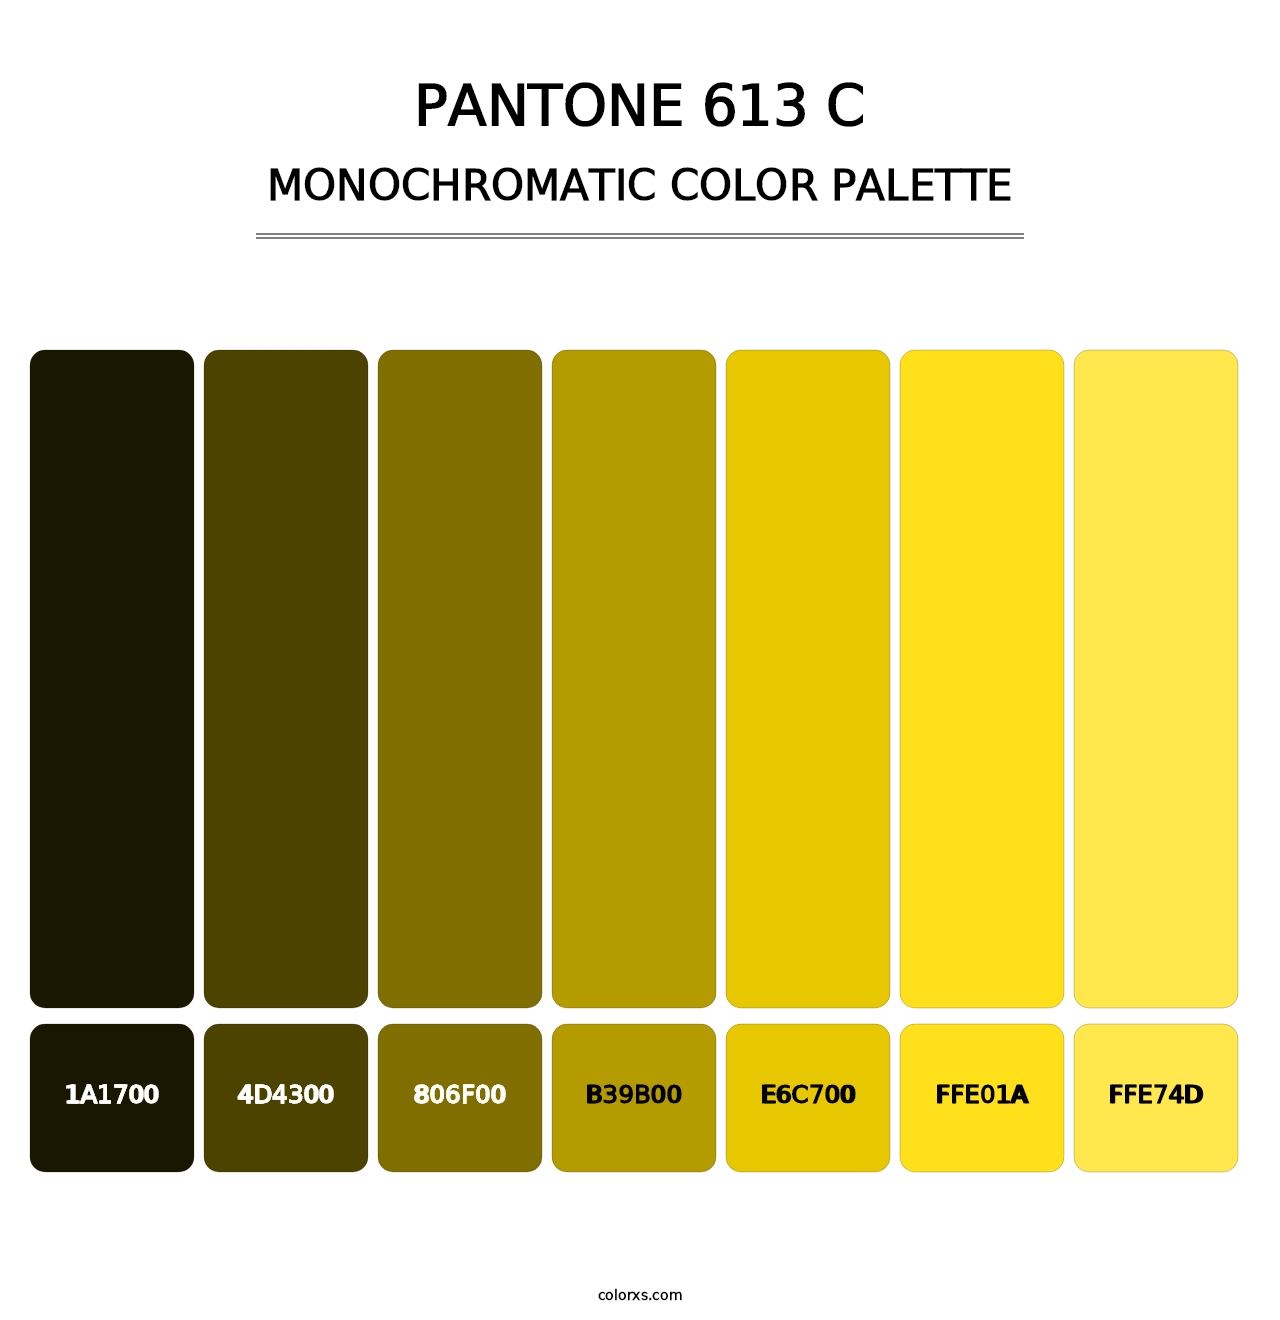 PANTONE 613 C - Monochromatic Color Palette